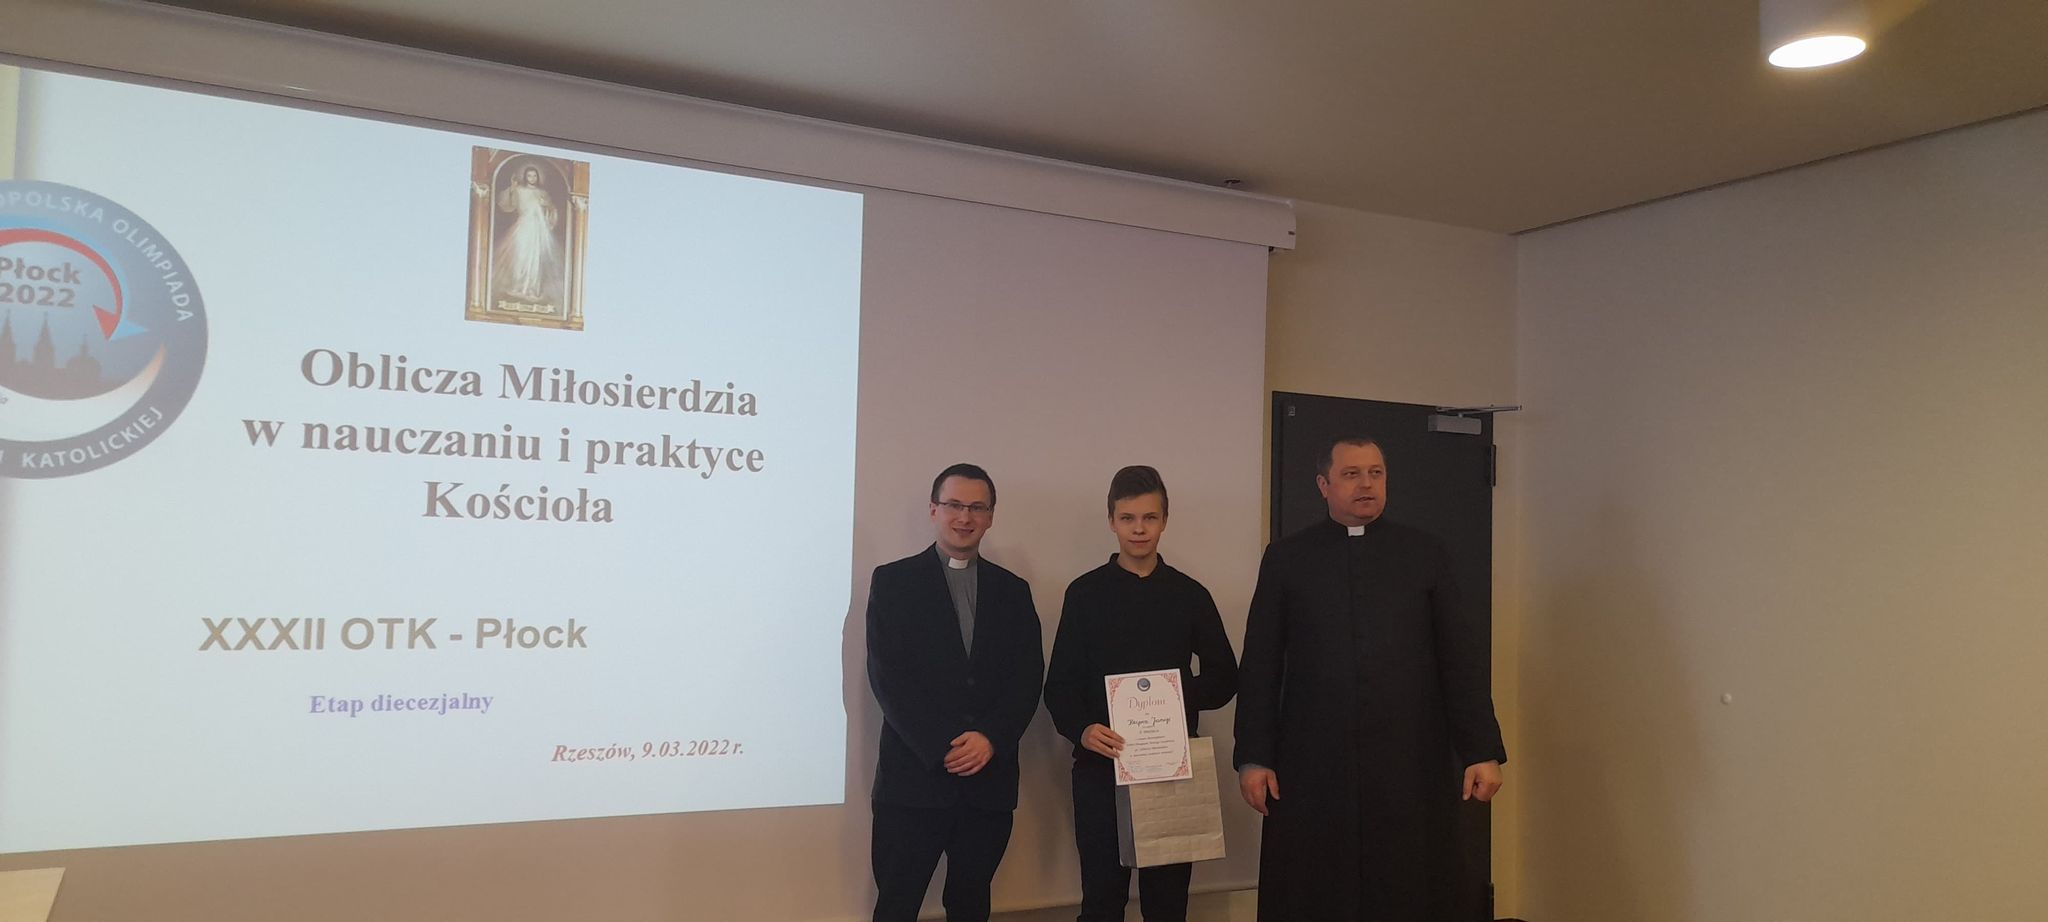 Kacper Janiga - laureat II miejsca etapu diecezjalnego olimpiady wraz z opiekunem ks. Łukaszem Ślusarczykiem oraz ks. Markiem Winiarskim